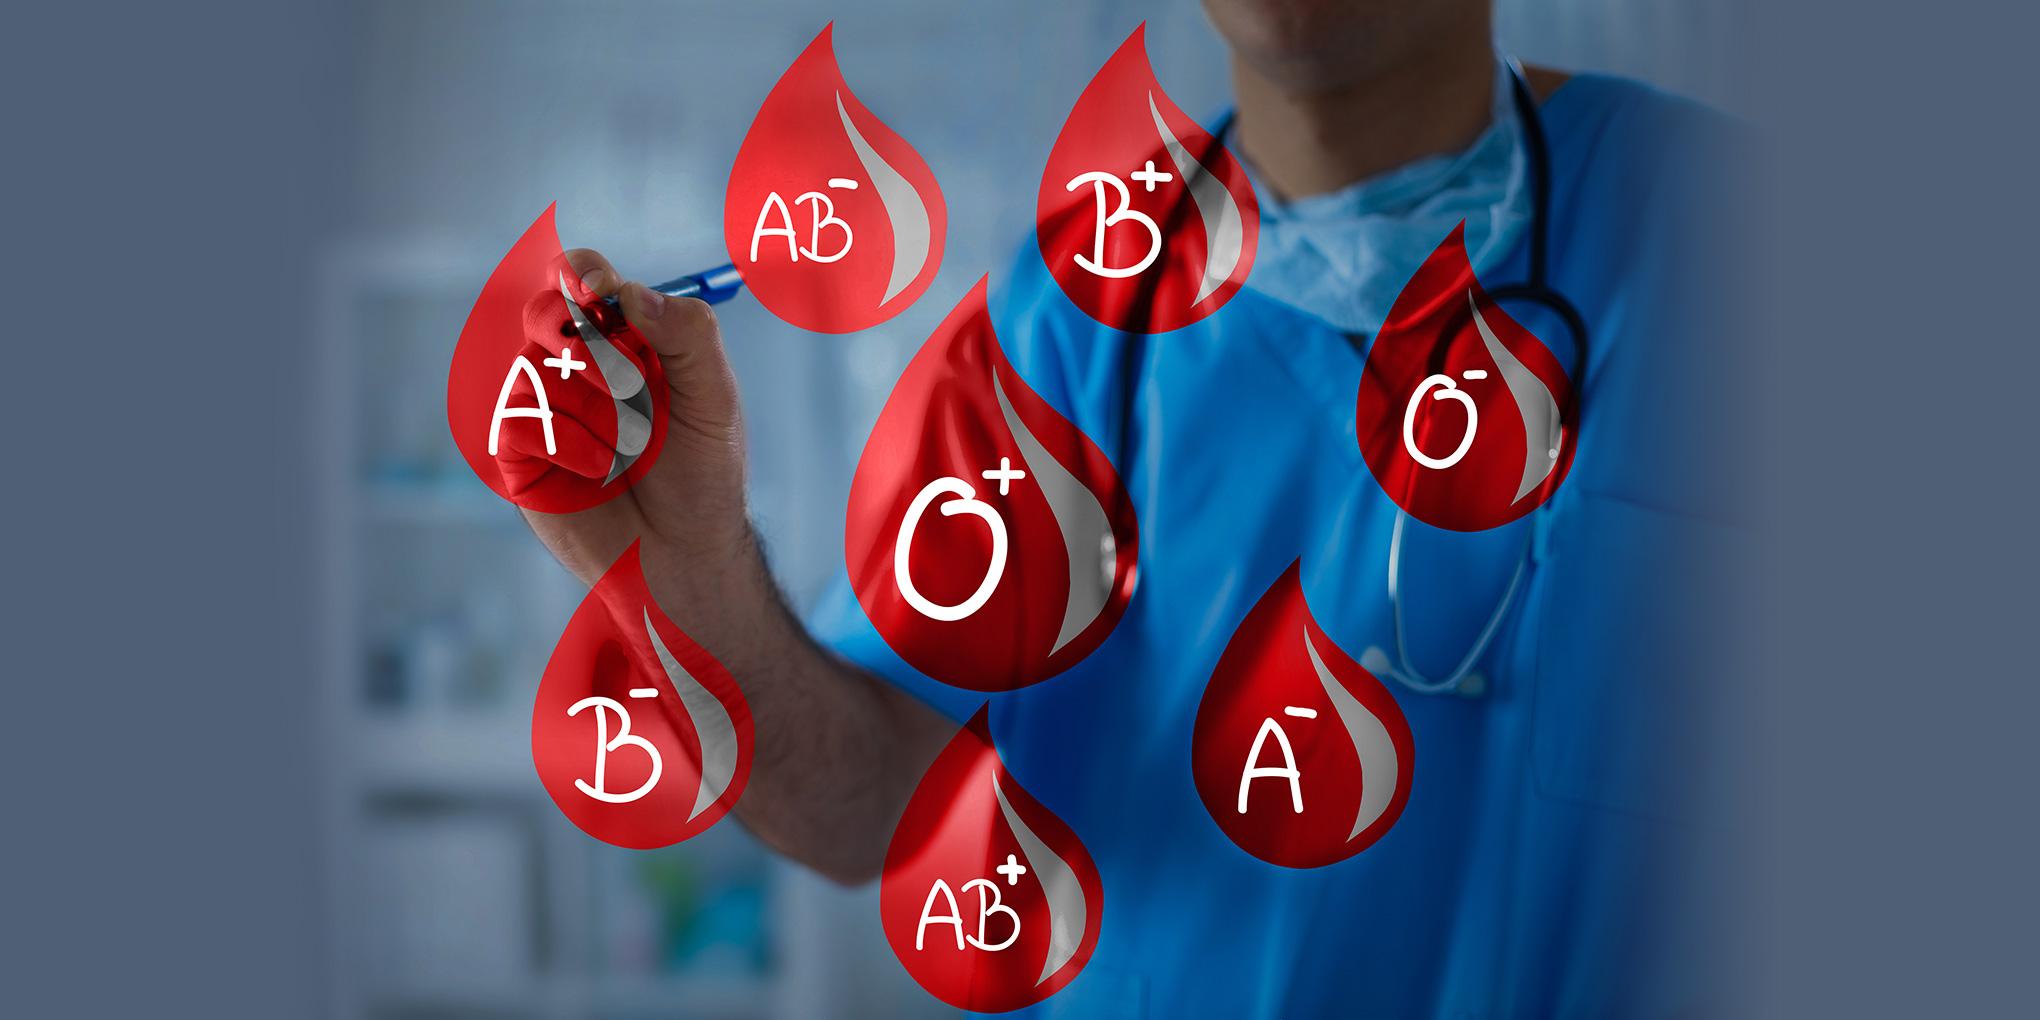 Veći rizik da obole imaju oni s krvnim grupama A, B ili AB - Avaz